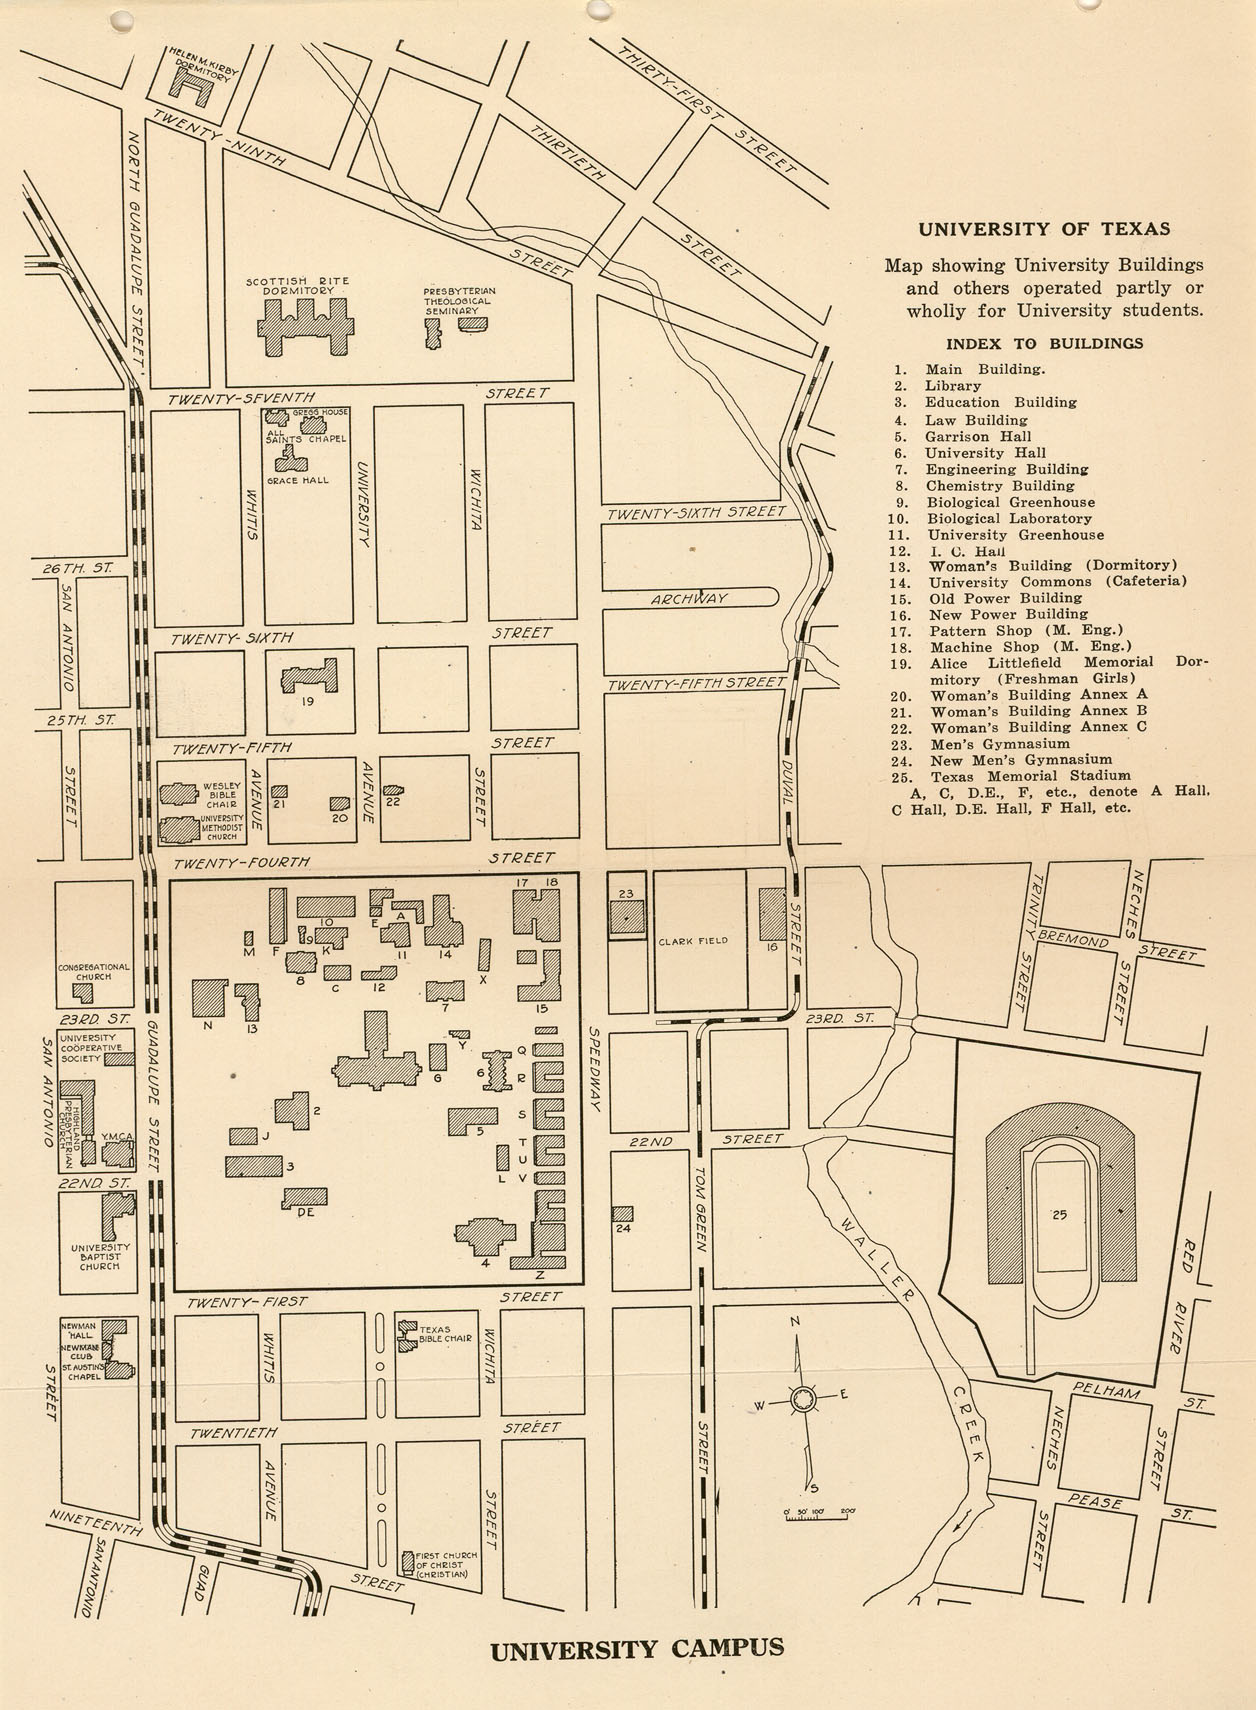 http://www.lib.utexas.edu/maps/ut_austin/university_of_texas-1926.jpg